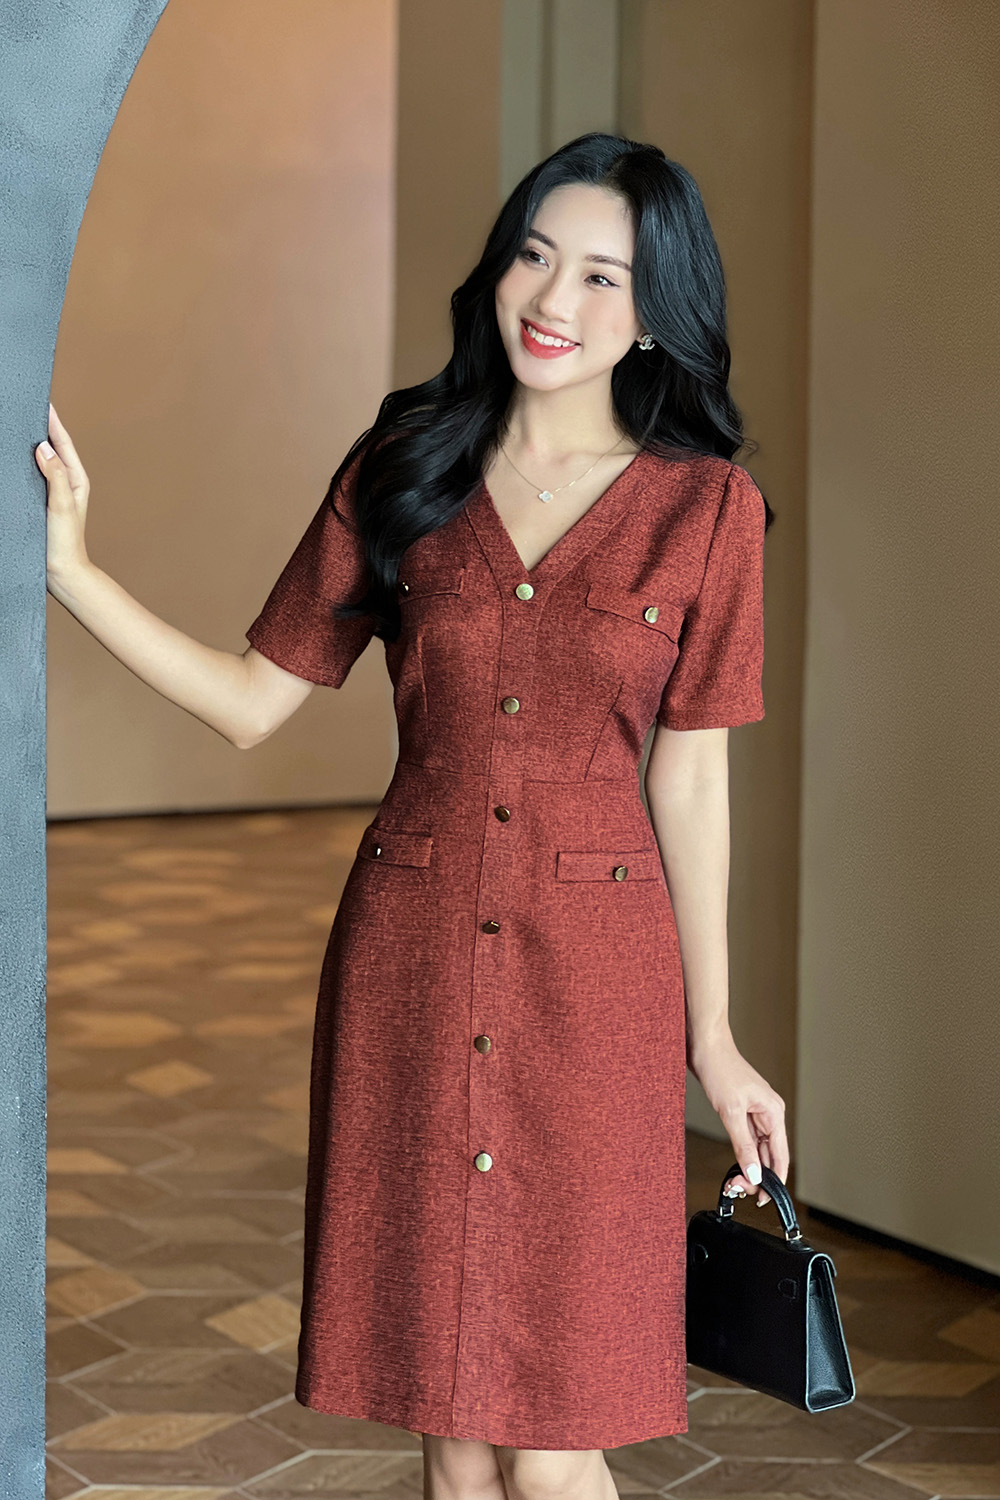 Hàng có sẵn] Chân Váy Công Sở Cao Cấp, Chân Váy Xếp Ly Với Tông Màu Nâu Tây  Sang Trọng Qúy Phái | Shopee Việt Nam